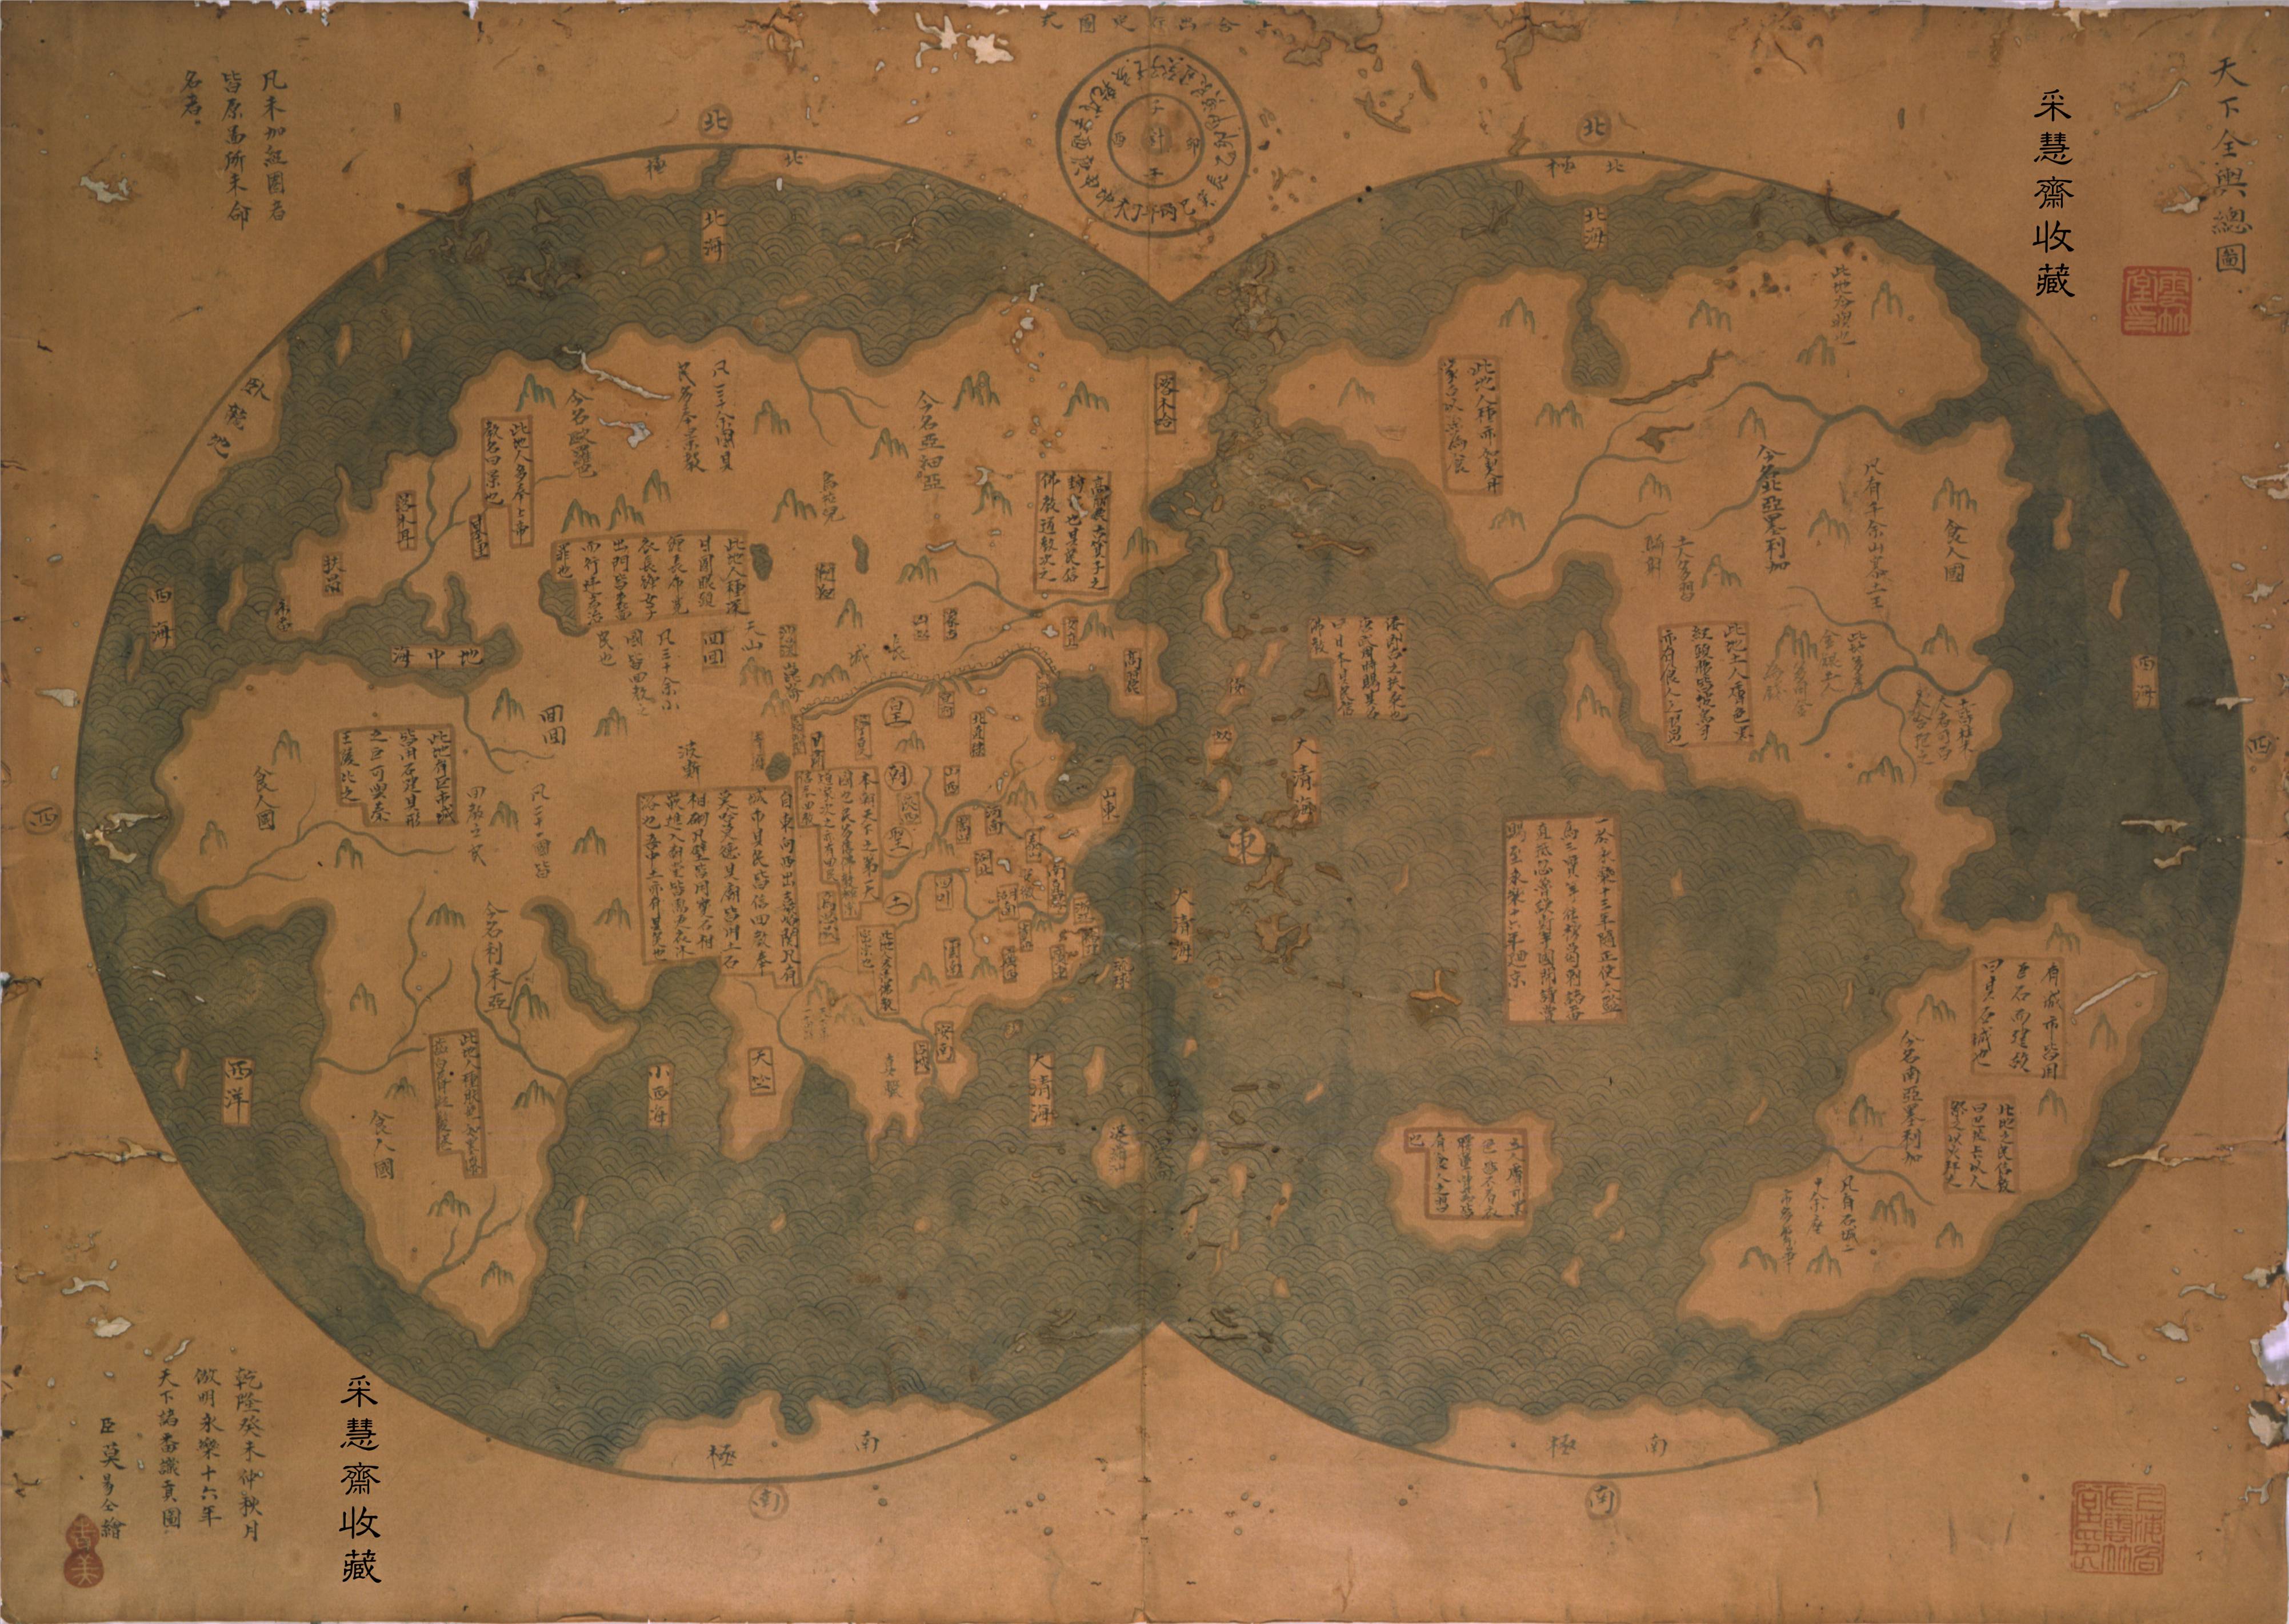 De acordo com as inscrições no topo do mapa, o planisfério adquirido por Liu Gang foi "desenhado por Mo Yi Zong, súbdito da dinastia Qing, no ano de 1763, reproduzindo um mapa-mundo de 1418 mostrando os bárbaros a prestar tributo à dinastia Ming".